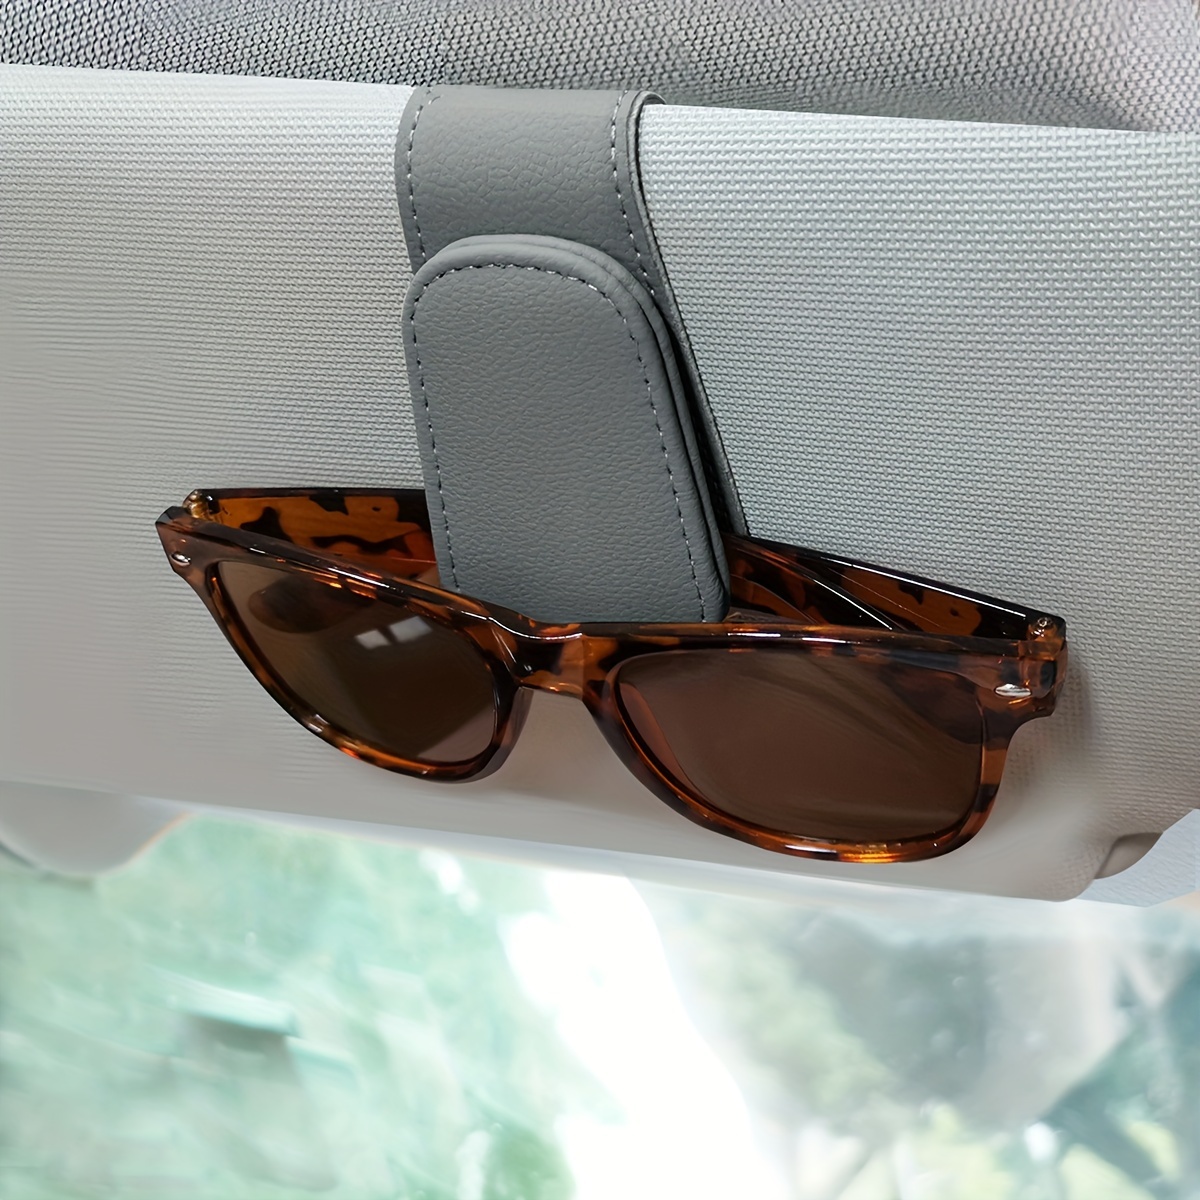 AHYBZN Brillenhalter für Auto, 2 Pack Magnet Sonnenbrillenhalter, Echt  Leder Auto Visier Zubehör Sonnenbrillen Halterung Magnetische